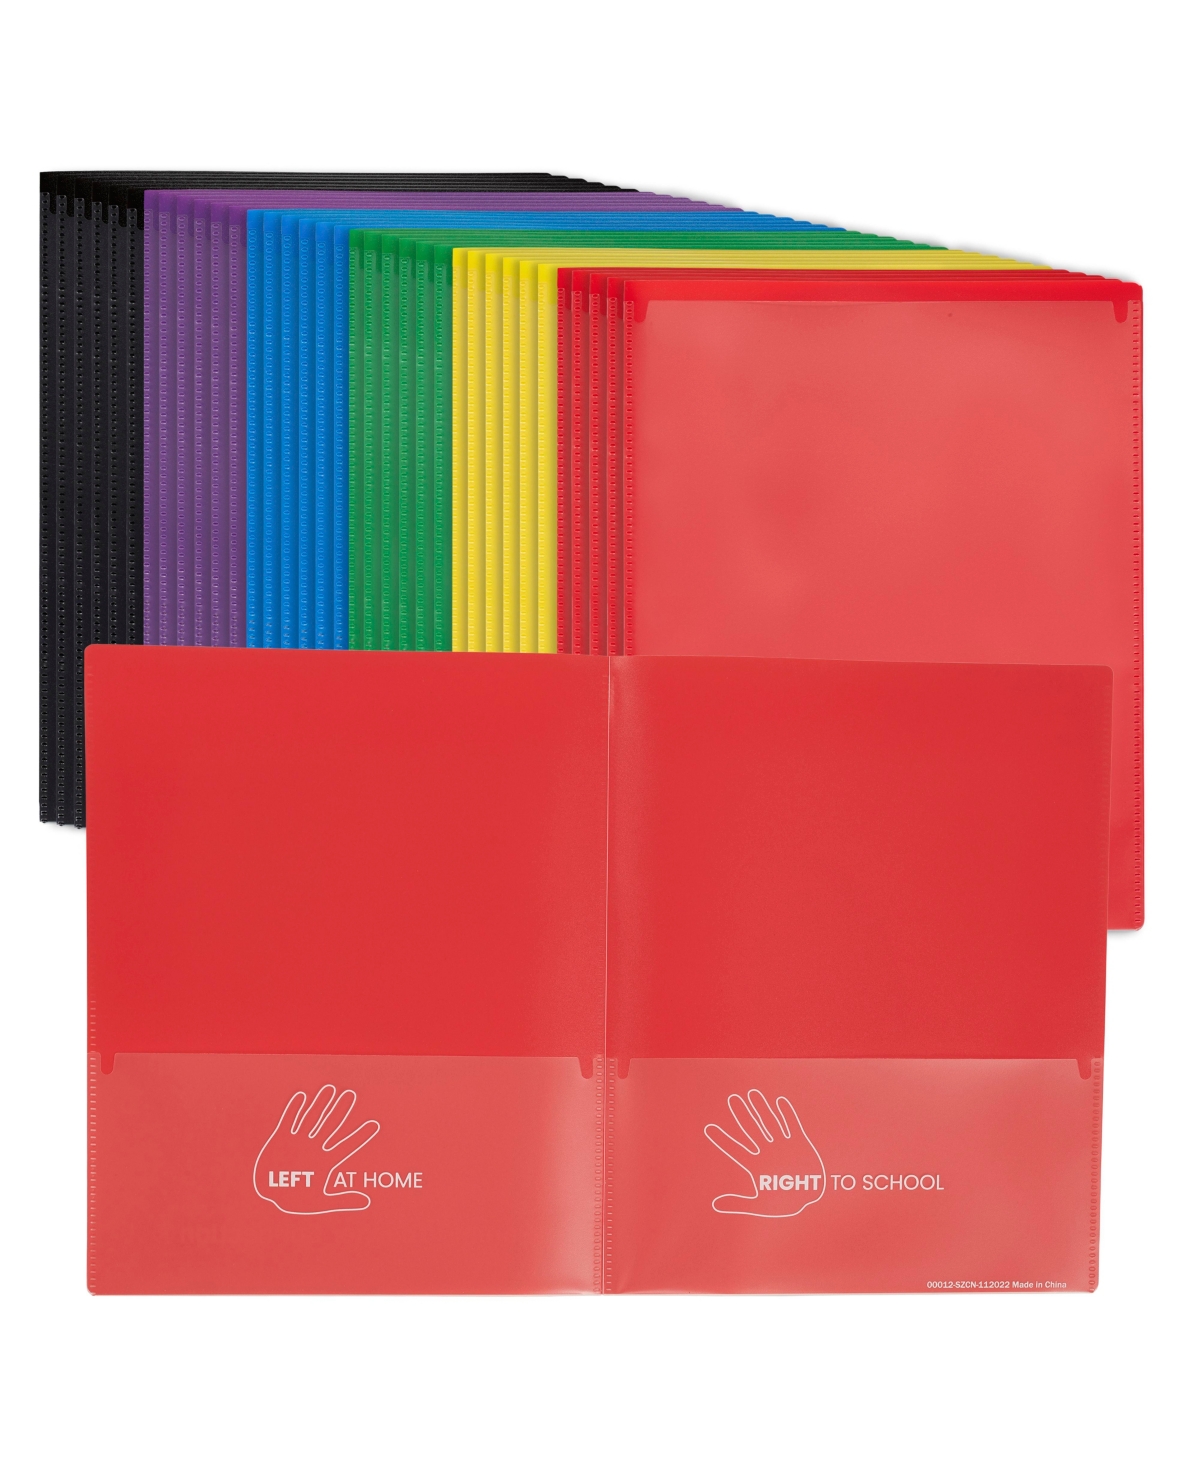 2-Pocket Parent-Teacher Classroom Communication Folder, School Supplies, Assorted, 36-Piece - Yellow